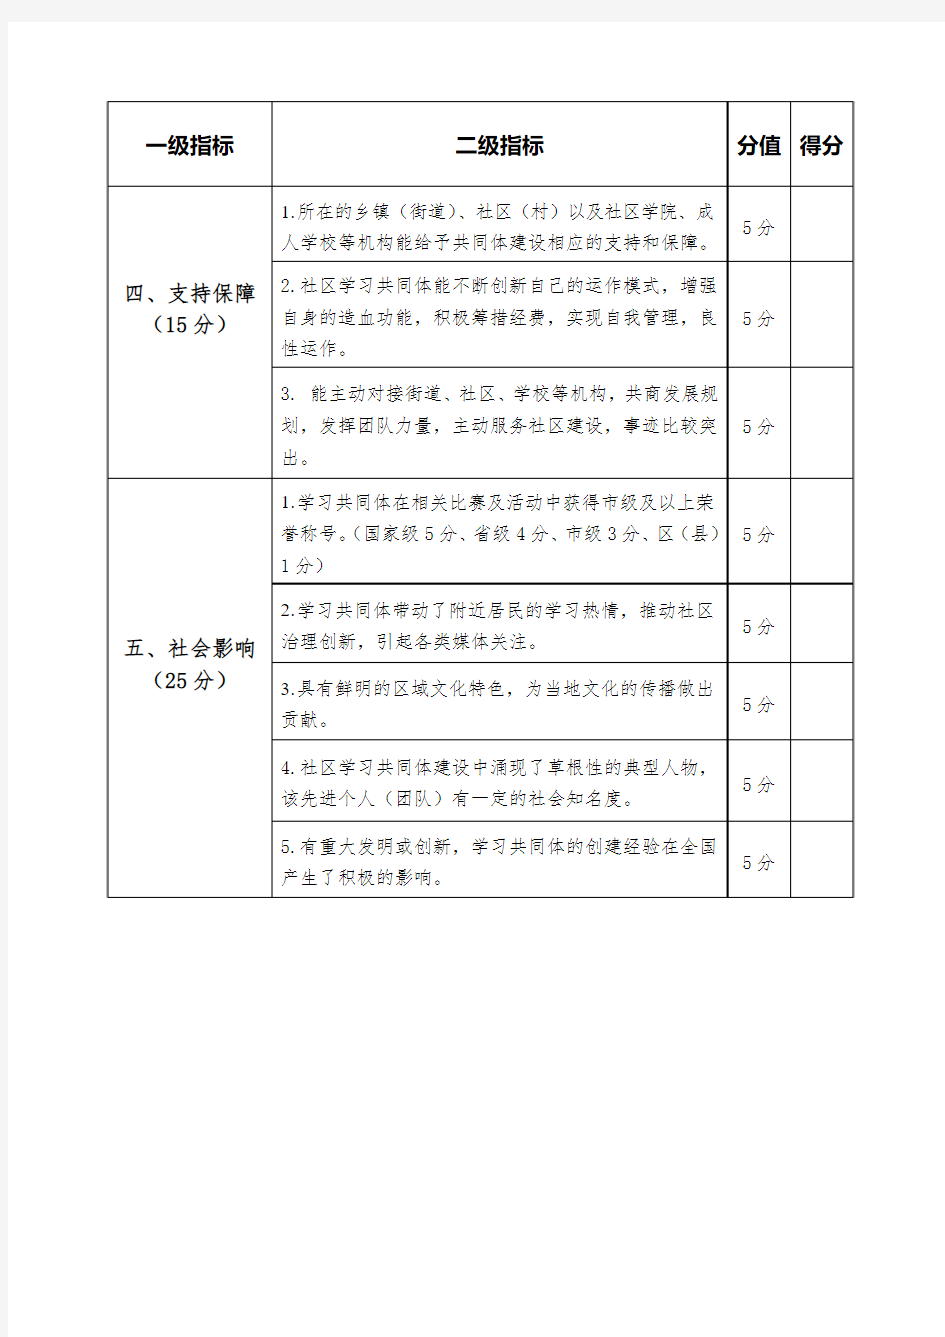 2.宁波市优秀社区学习共同体评估表